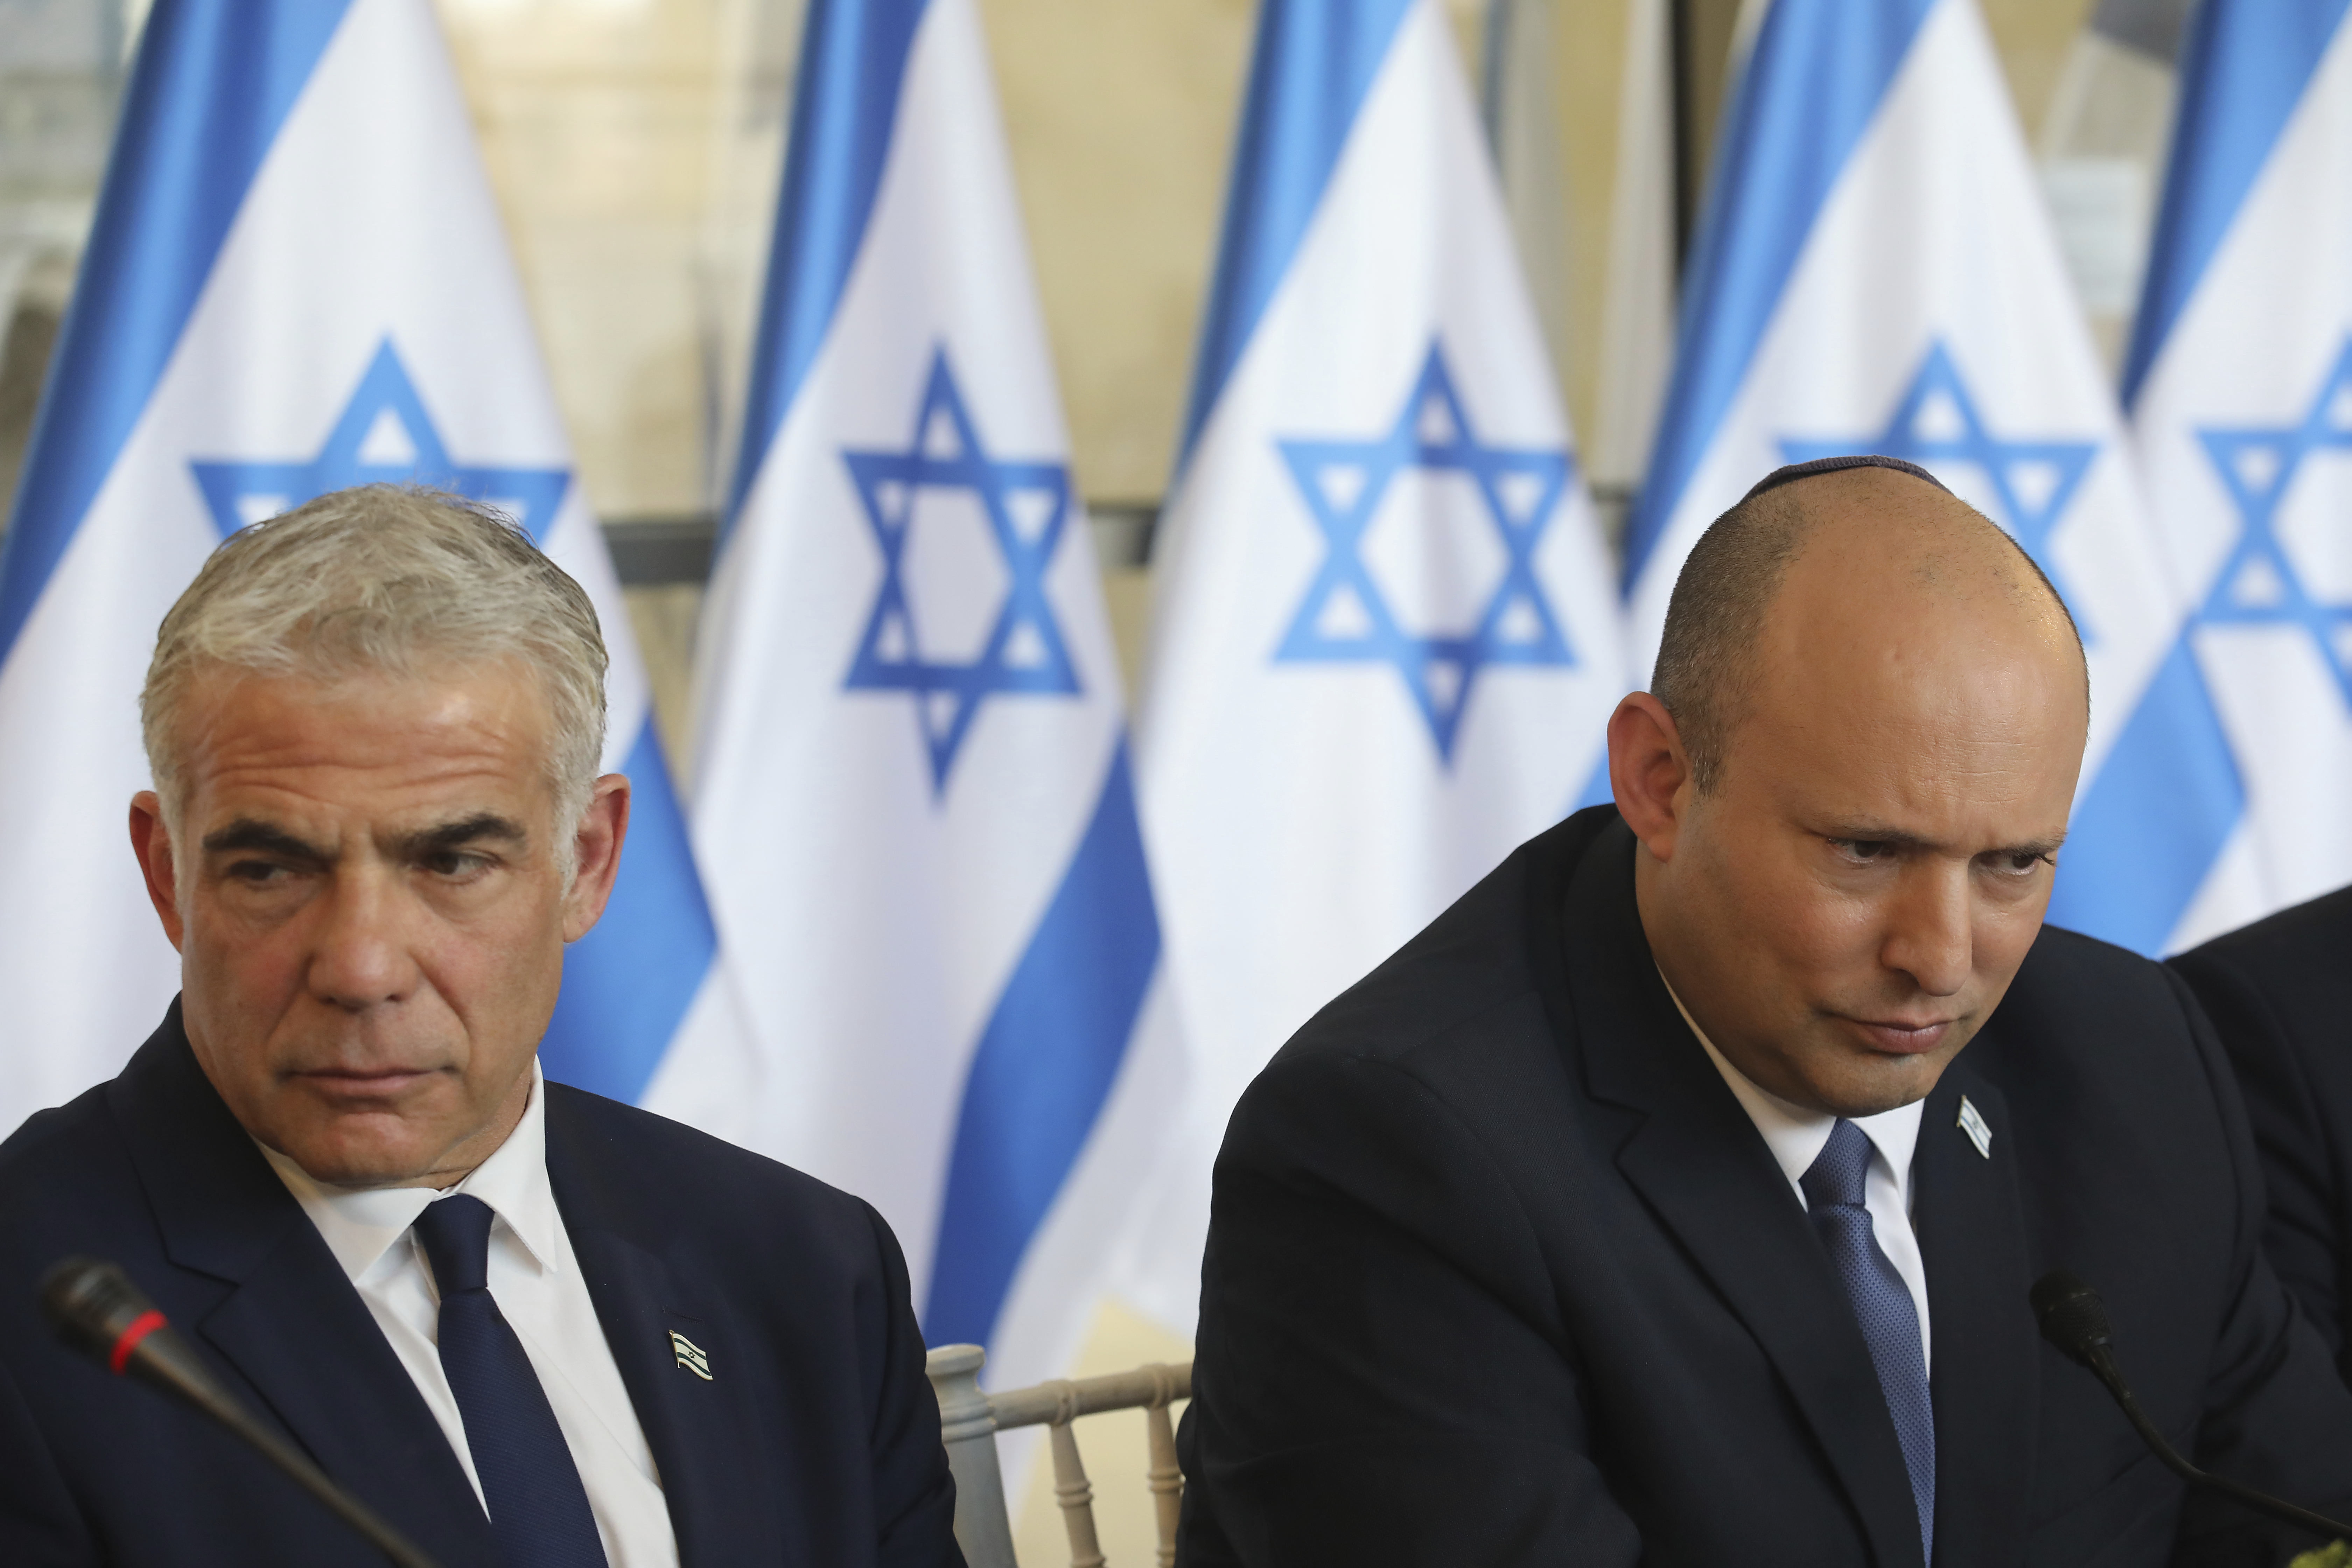 El Gobierno de Israel se tambalea tras perder una votación clave sobre los asentamientos